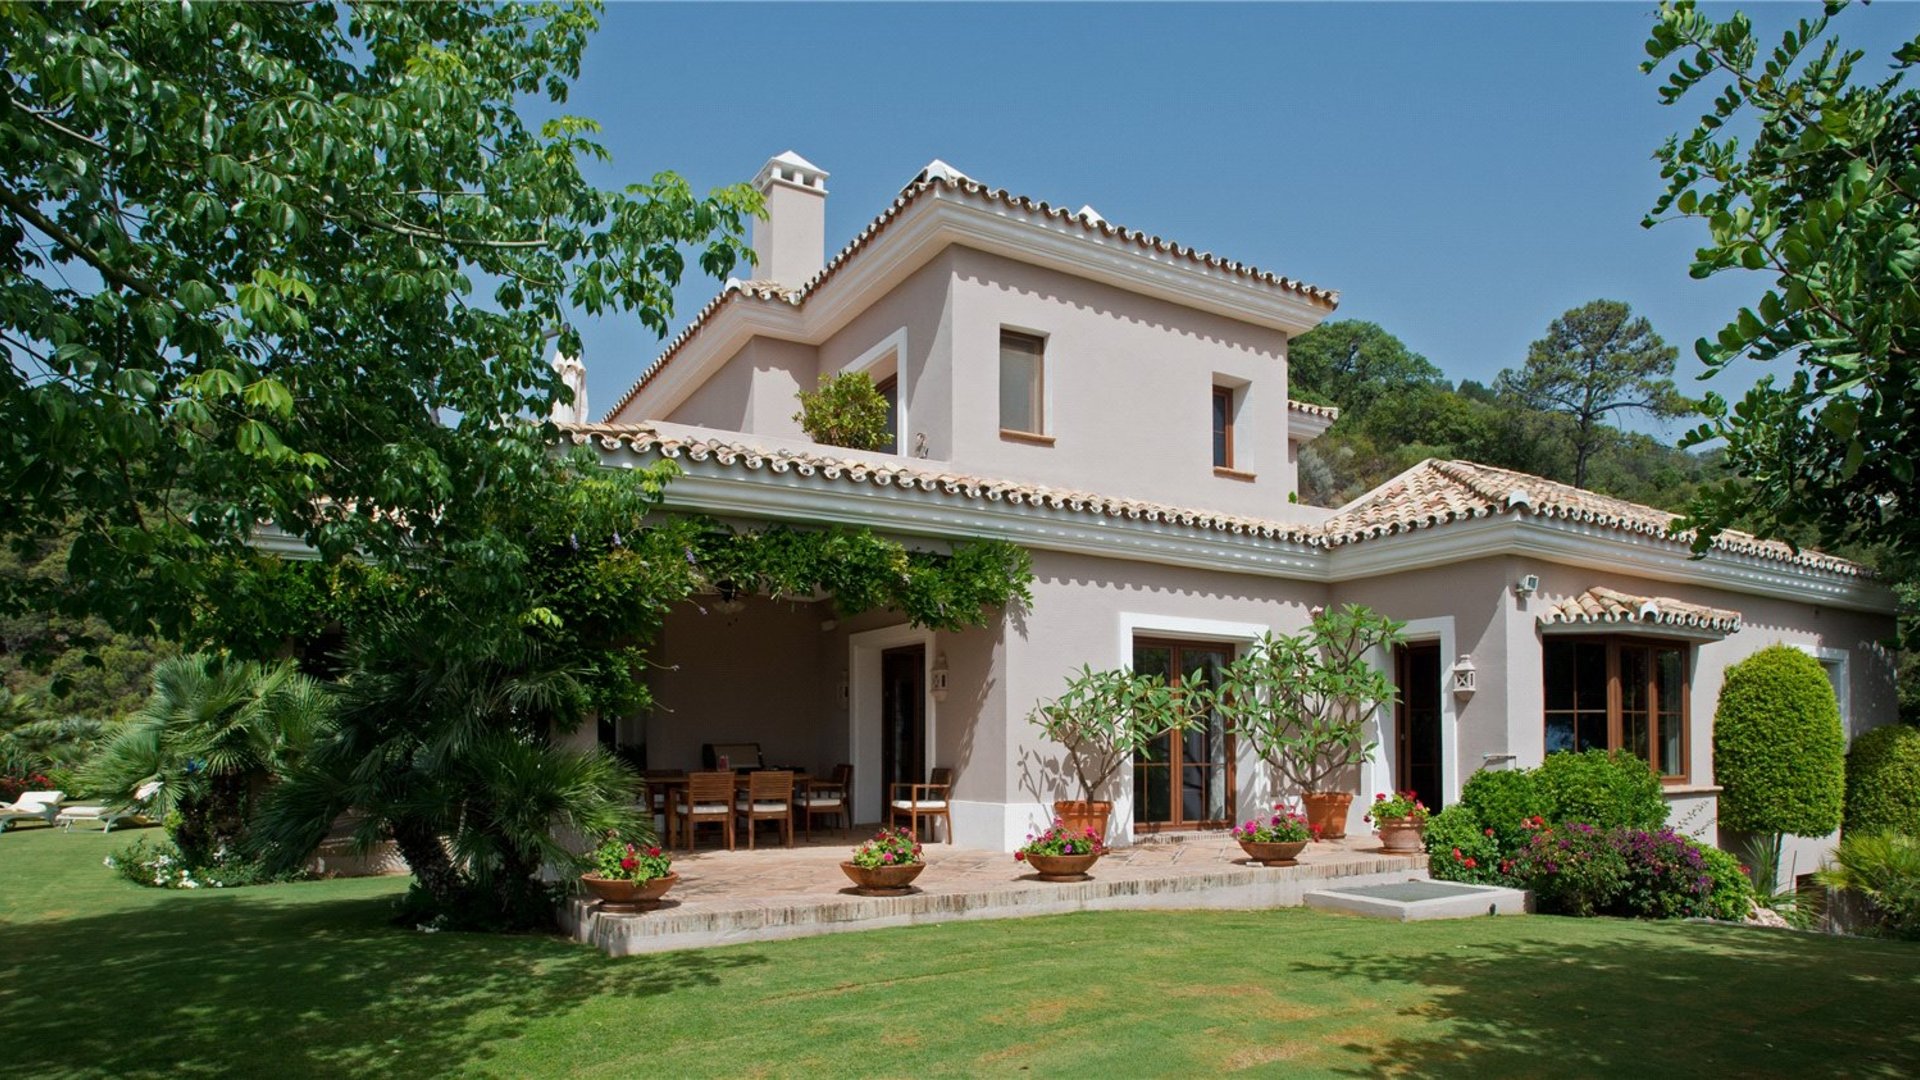 Property for sale in La Zagaleta, Benahavis, Spain